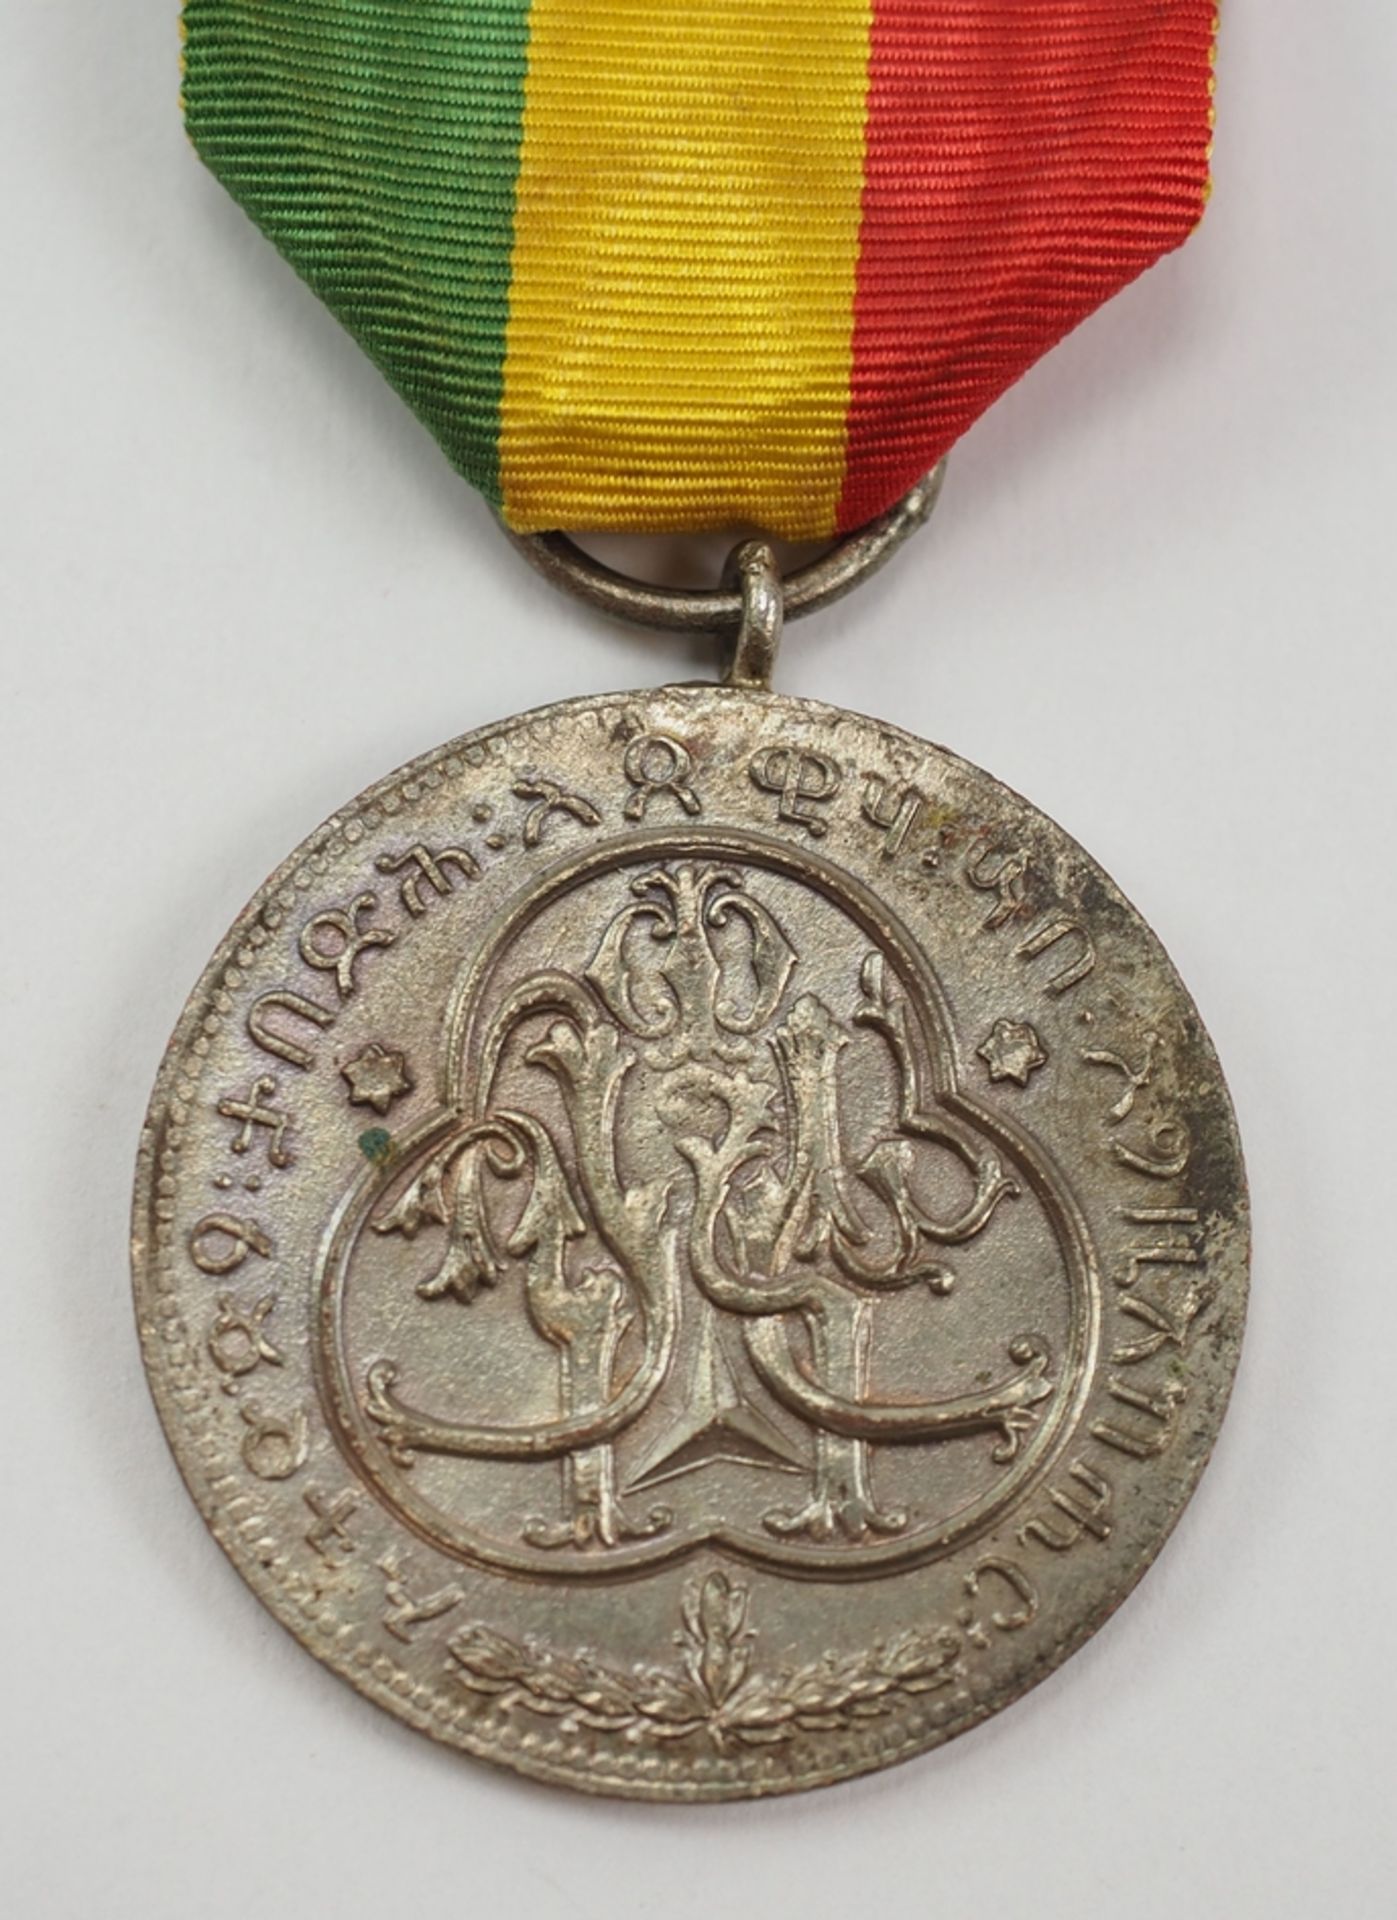 Äthiopien: Medaille auf die Krönung Haile Selassies, in Silber. - Bild 2 aus 2